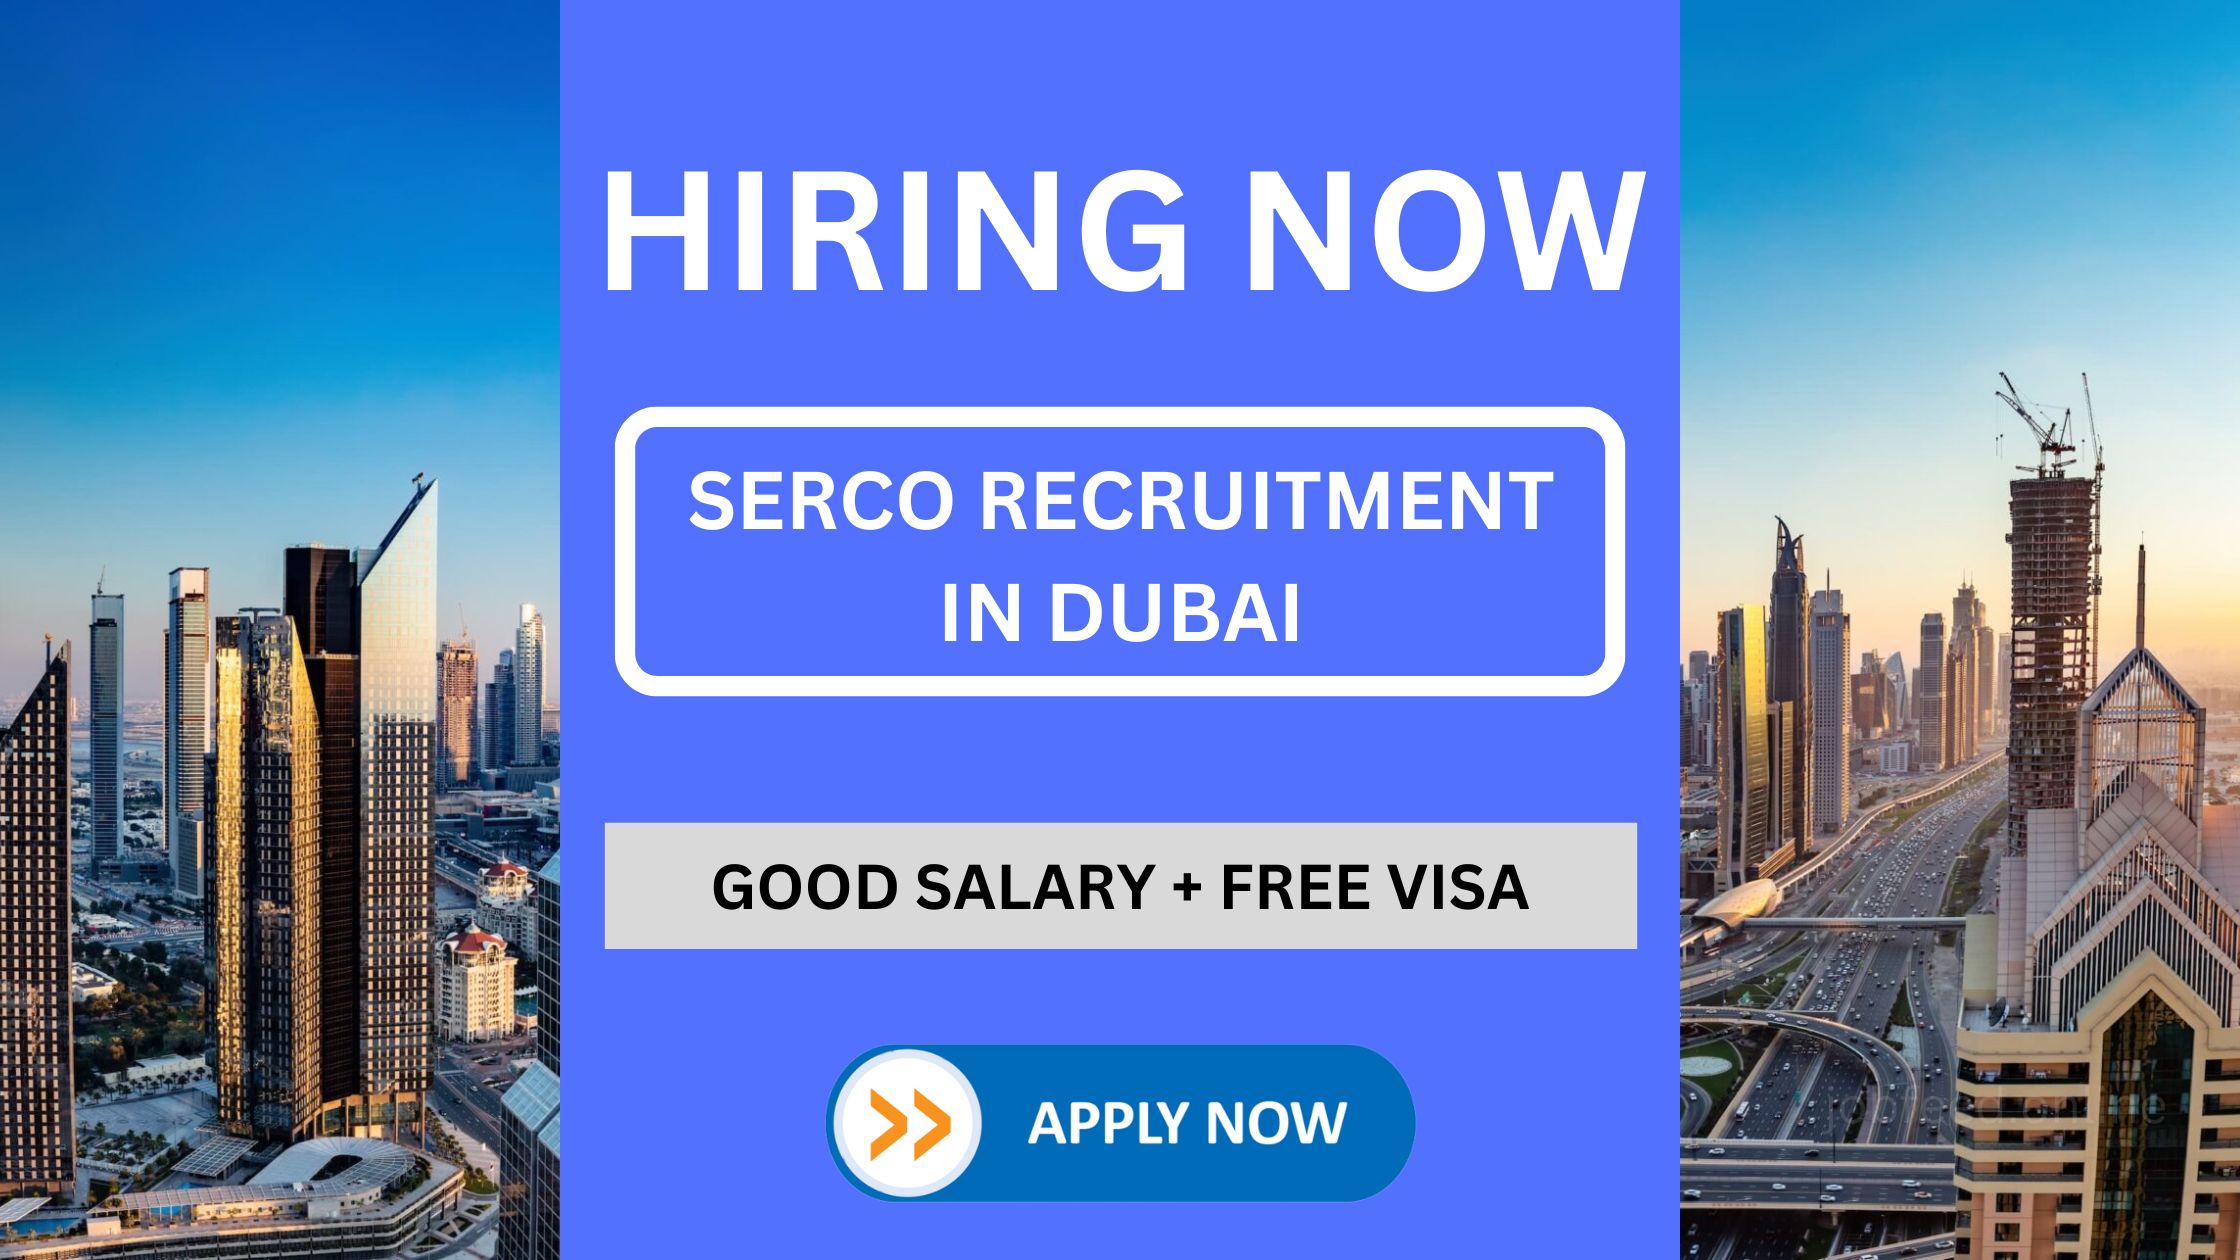 दुबई मेट्रो रनिंग कंपनी (SERCO) भर्ती: तकनीशियन वॉटर नेटवर्क/पंप मैकेनिकल